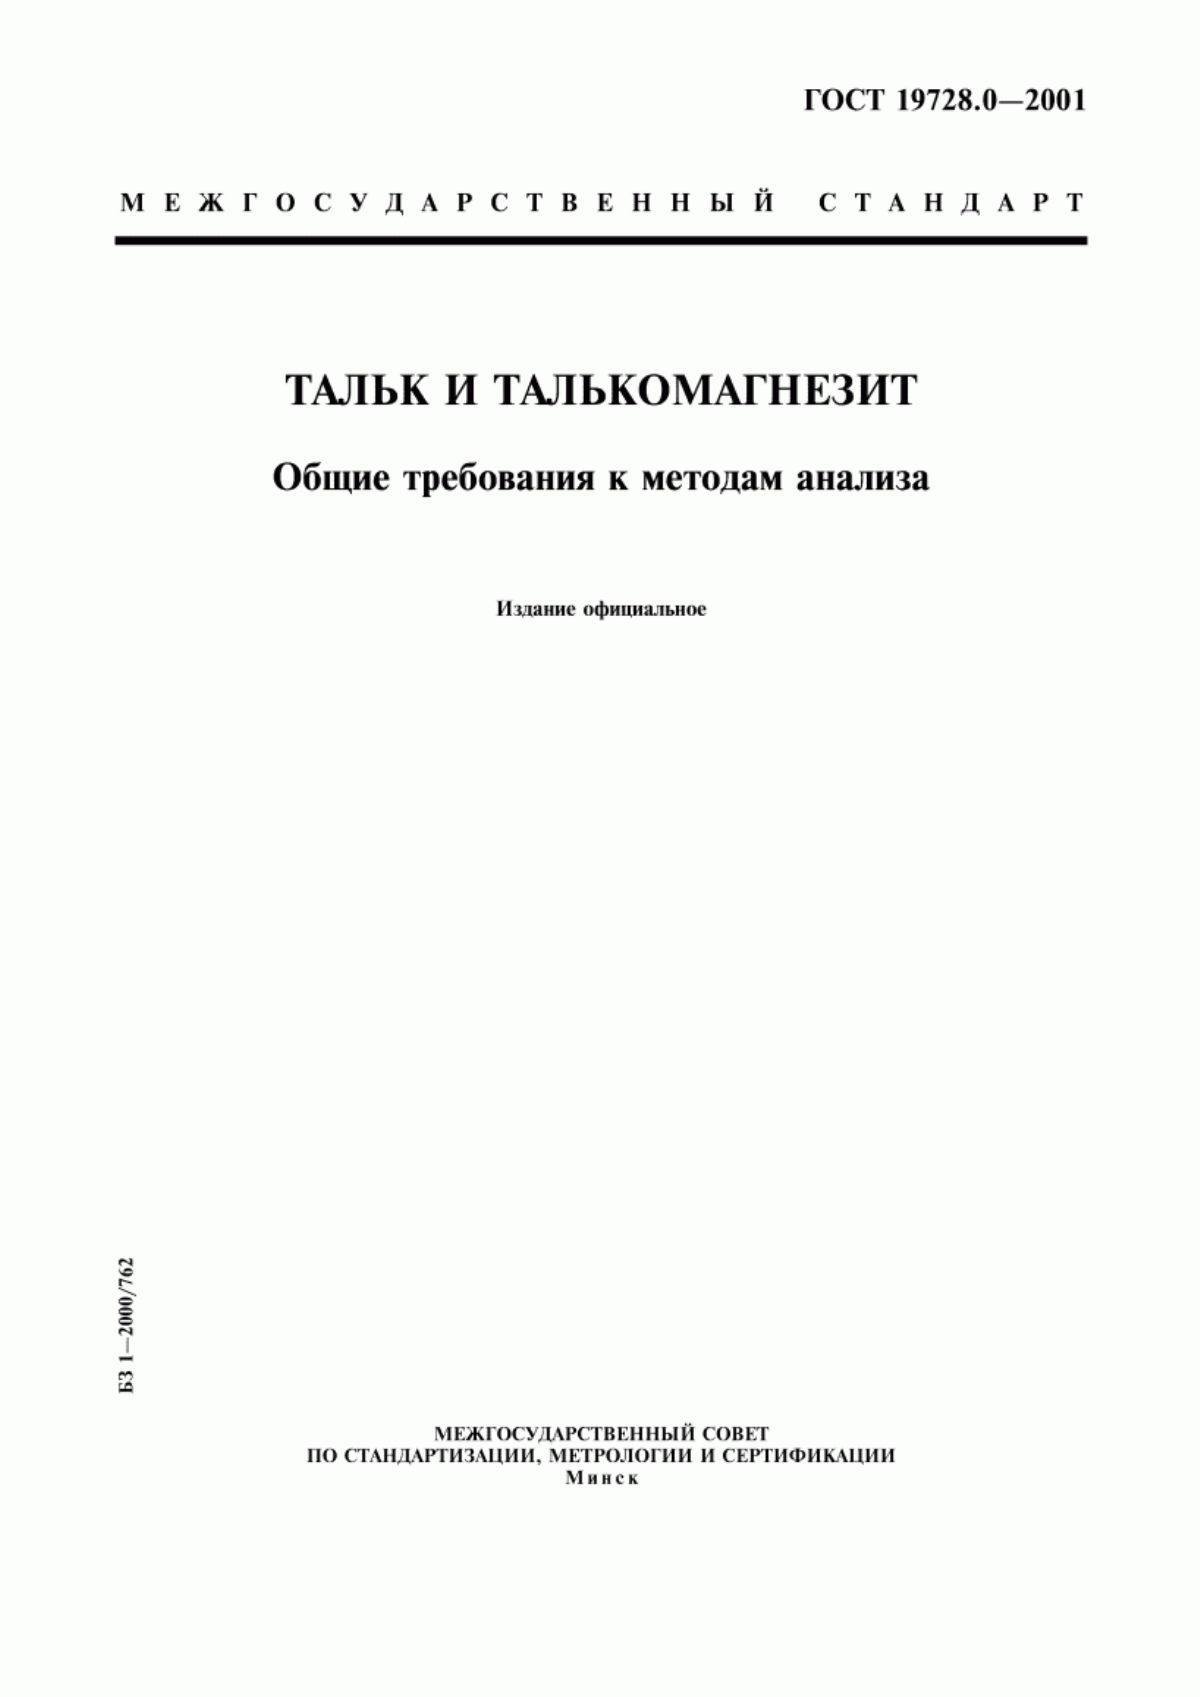 ГОСТ 19728.0-2001 Тальк и талькомагнезит. Общие требования к методам анализа